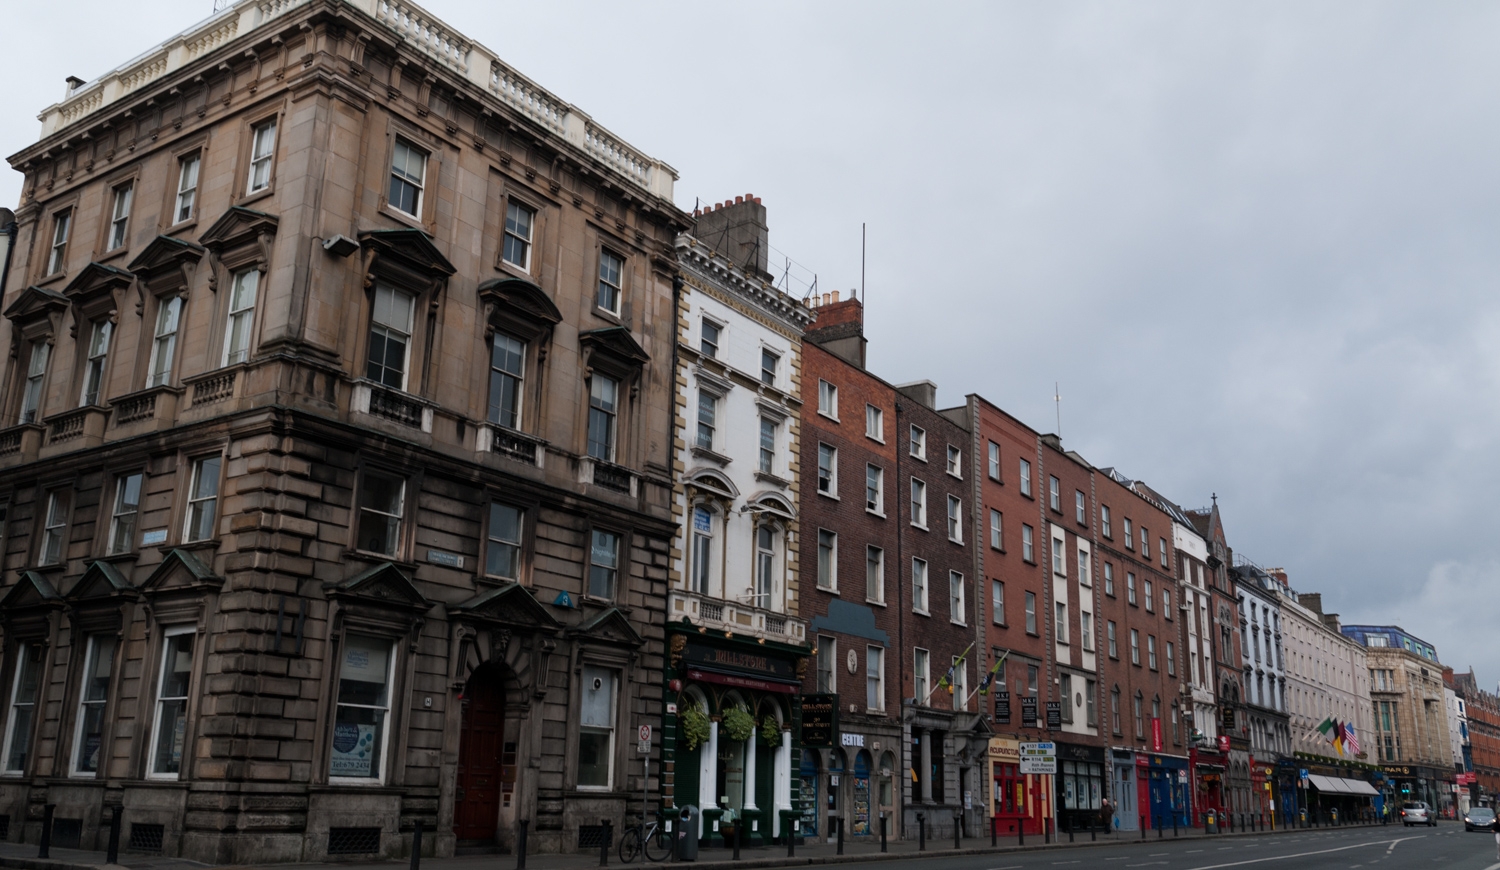 A Very Irish Street